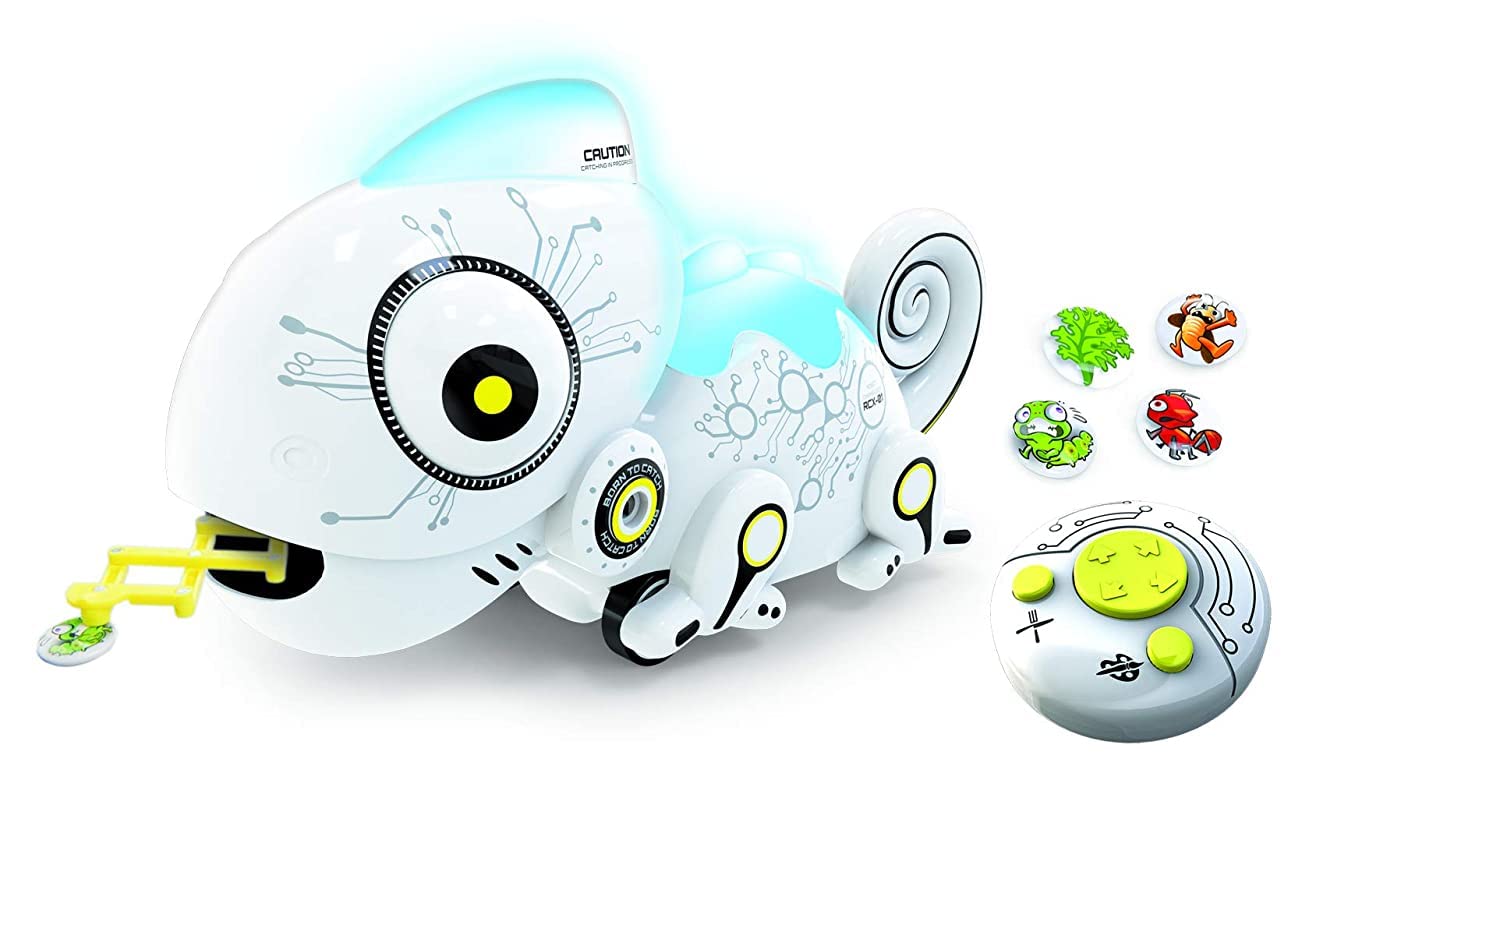 YCOO 88538 ROBO CHAMELEON by Silverlit, ferngesteuerter Roboter, Robotertier für Kinder, füttere das Chameleon, inkl. 4 Metallinsekten, Licht- und Soundeffekte, 28 cm, weiß, ab 3 Jahren